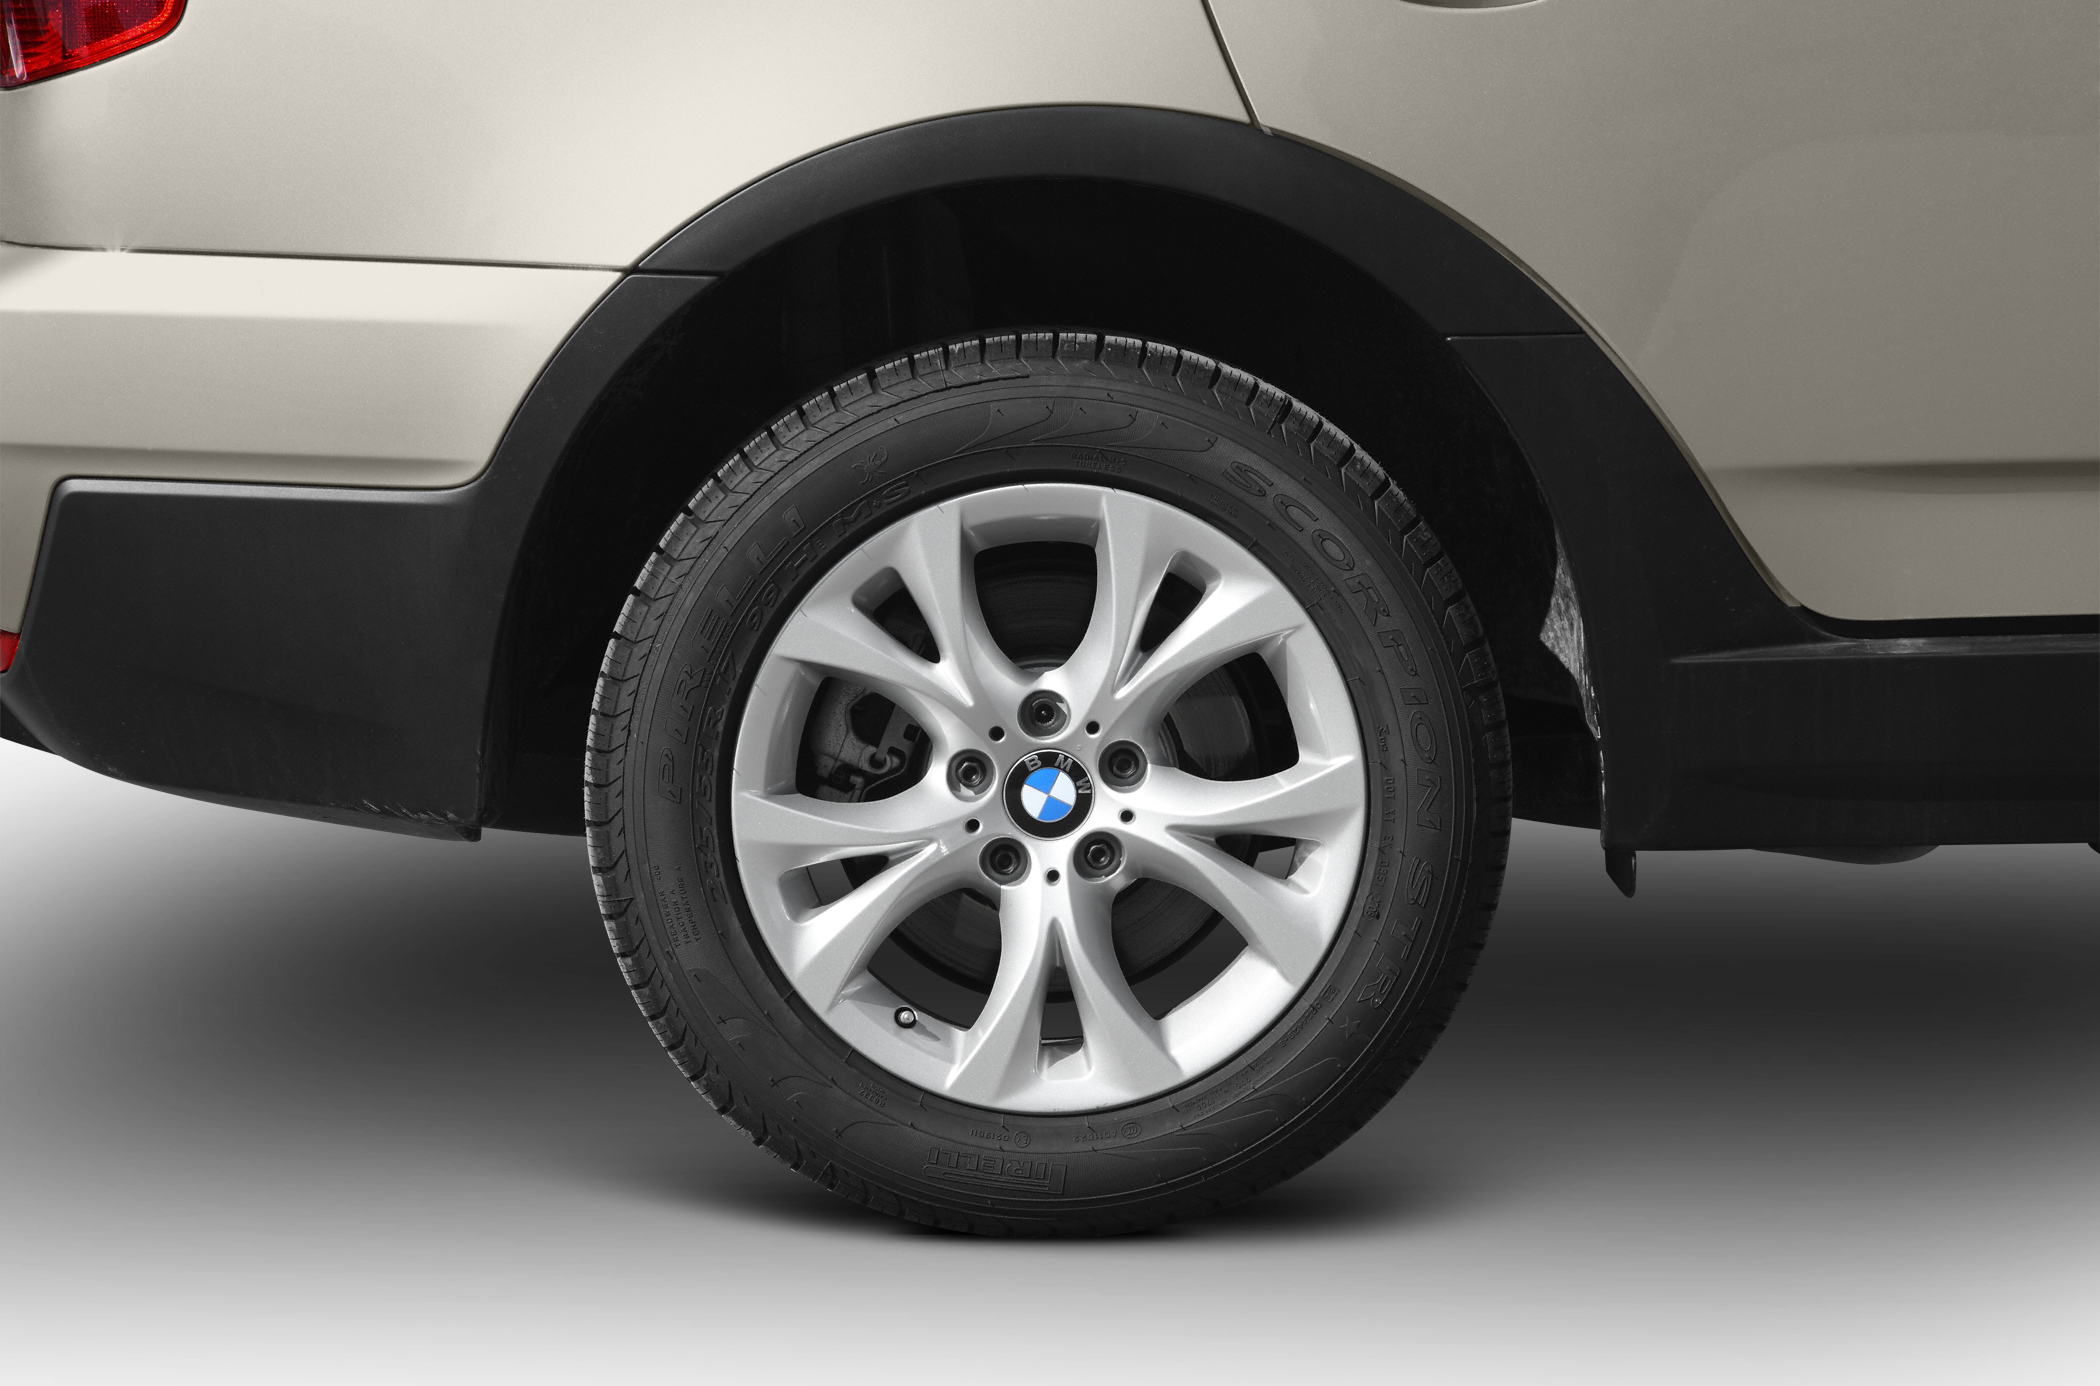 2010 BMW X3